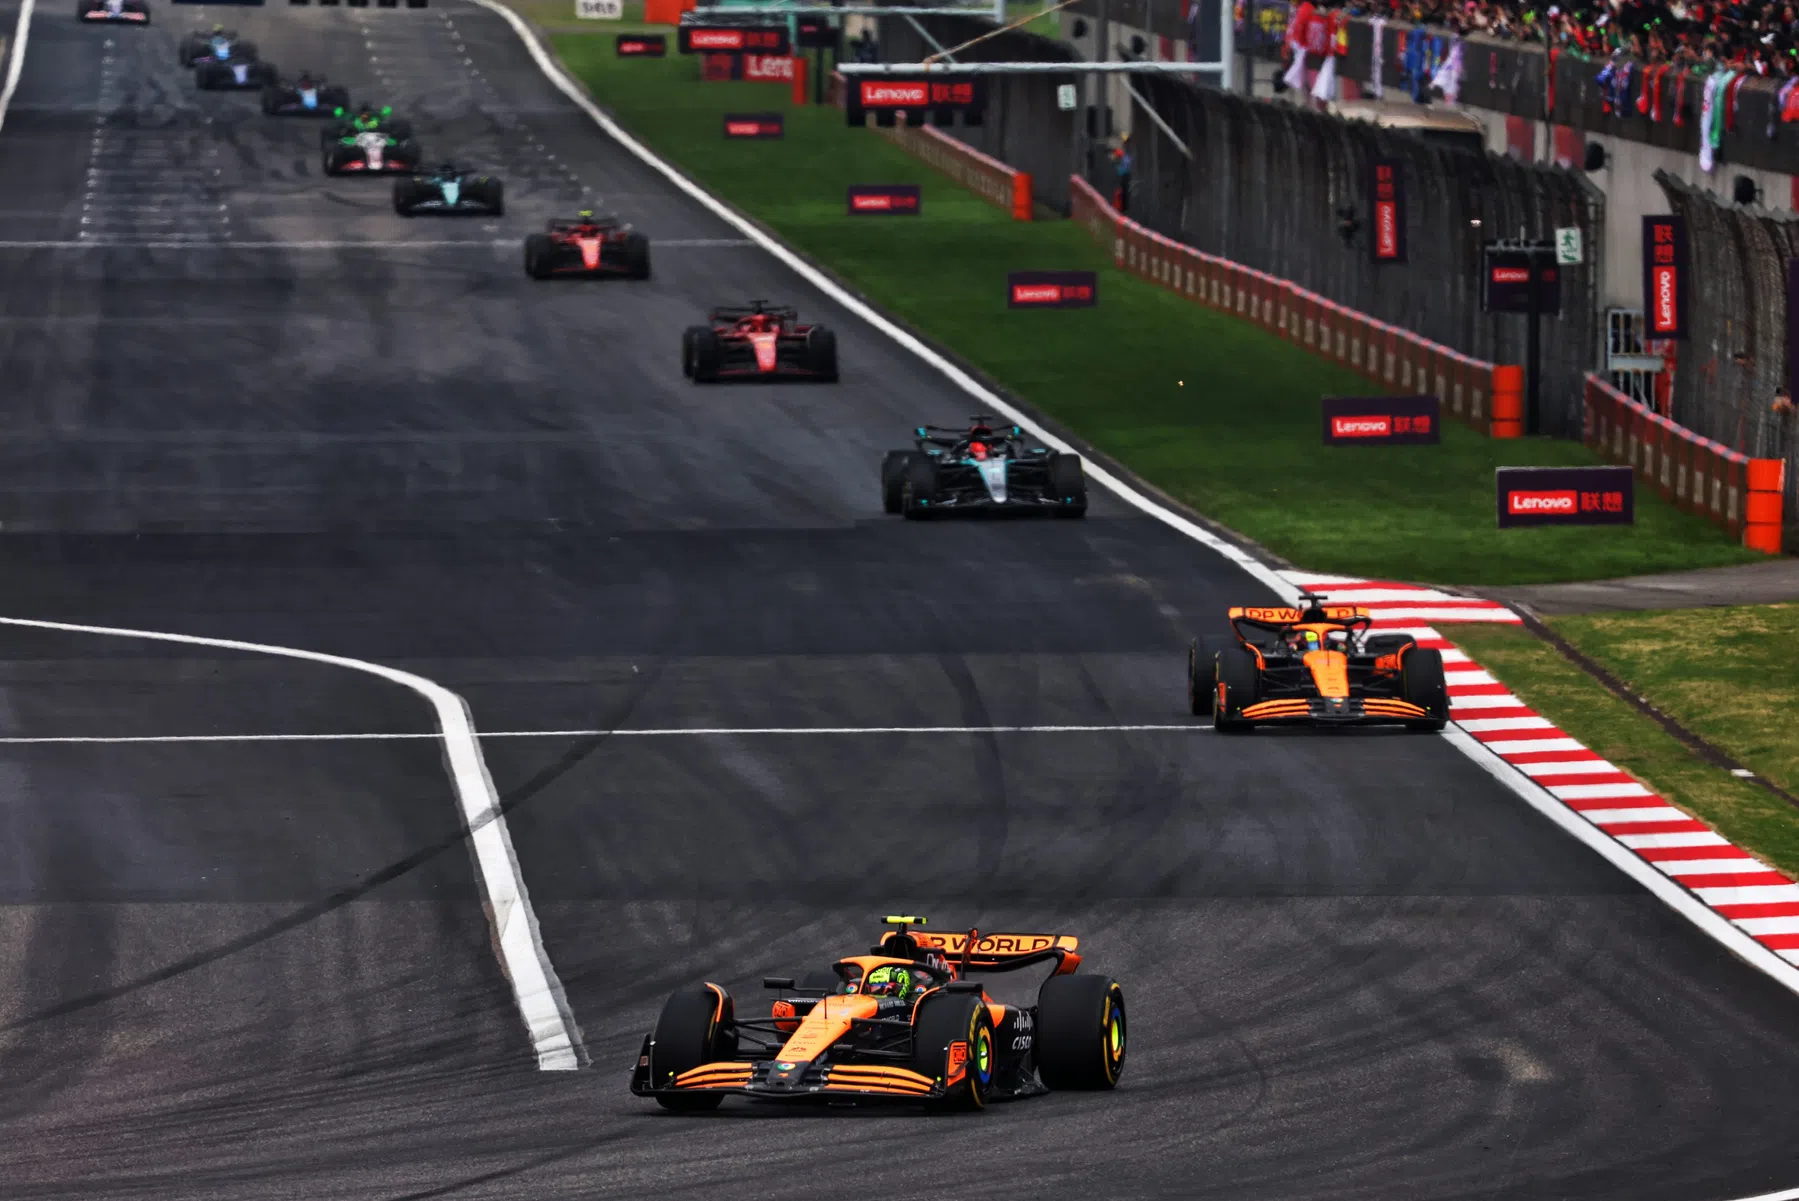 Rückkehr des Grand Prix auf dem Hockenheimring dank neuer Investoren